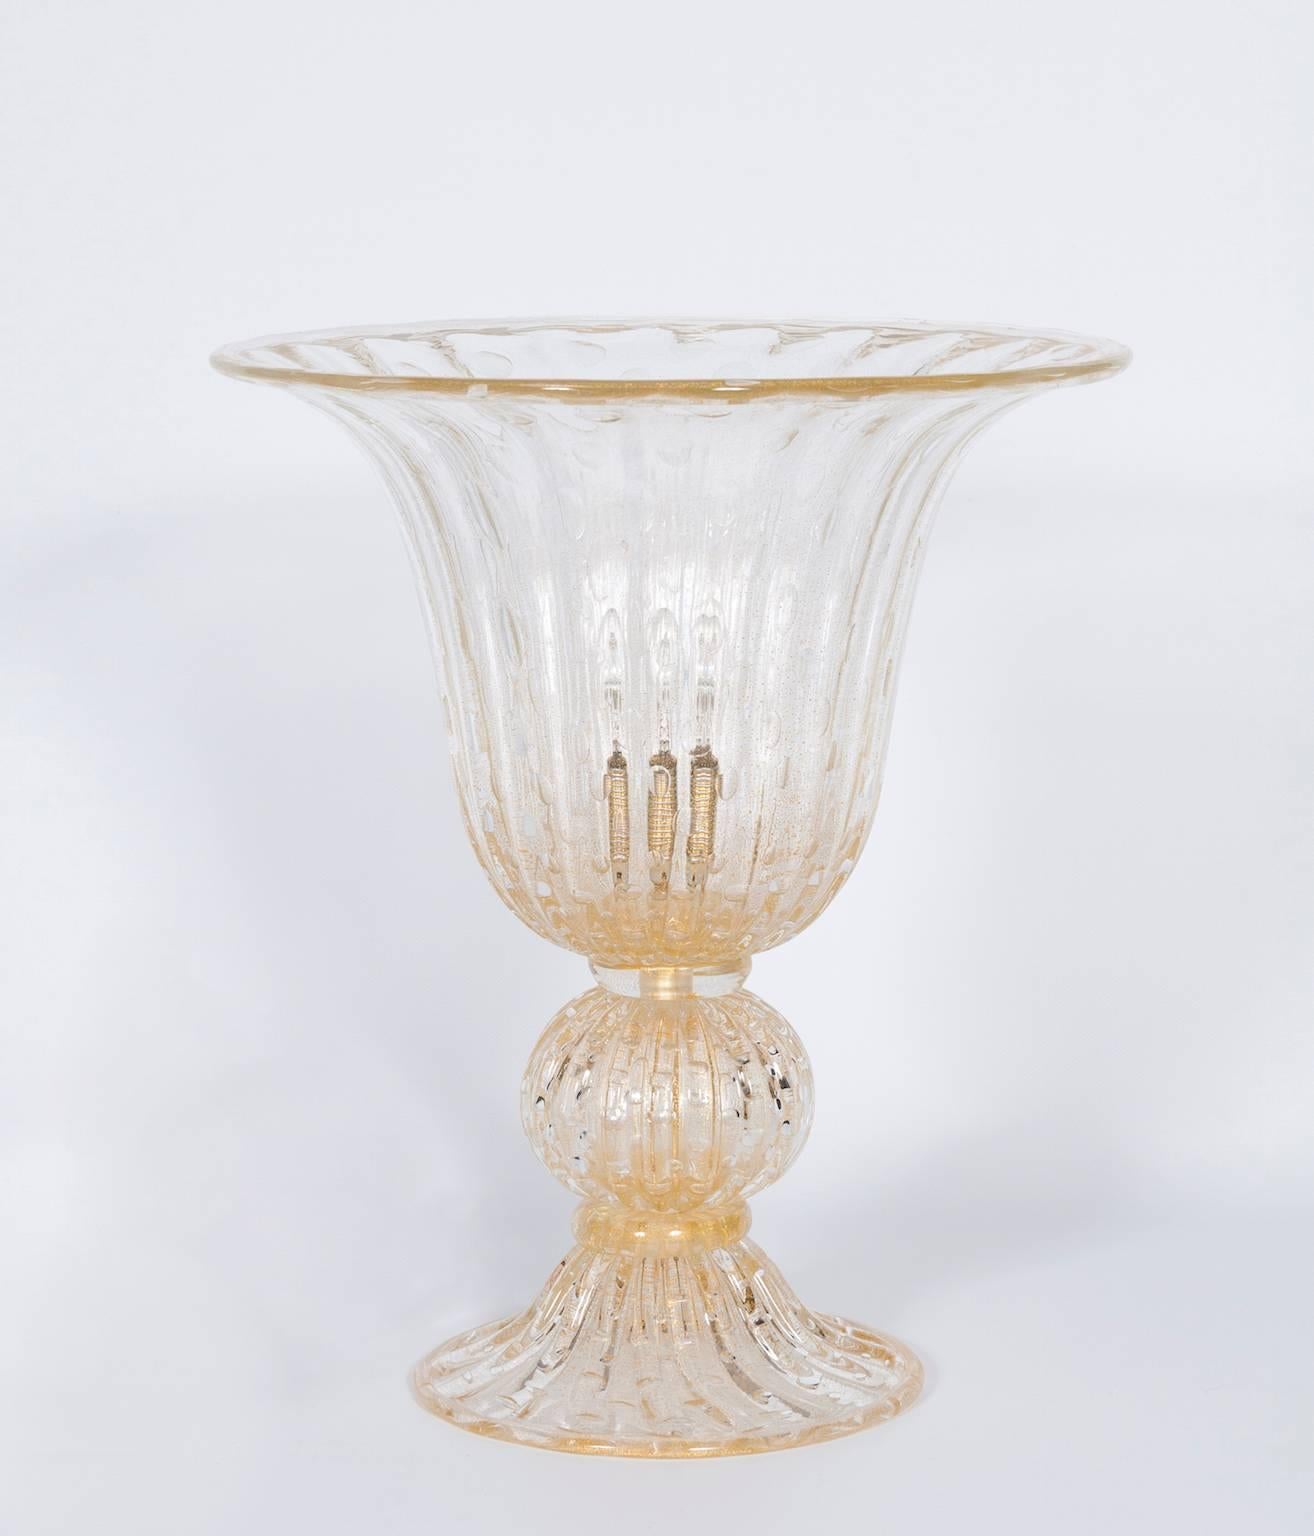 Imposante handgefertigte Murano-Glas-Tischlampe mit versenkten Blasen.
Diese moderne Tischleuchte, die vollständig aus exquisitem Murano-Glas in einem satten Goldton gefertigt ist, verkörpert italienische Kunstfertigkeit. Das bezaubernde Design mit